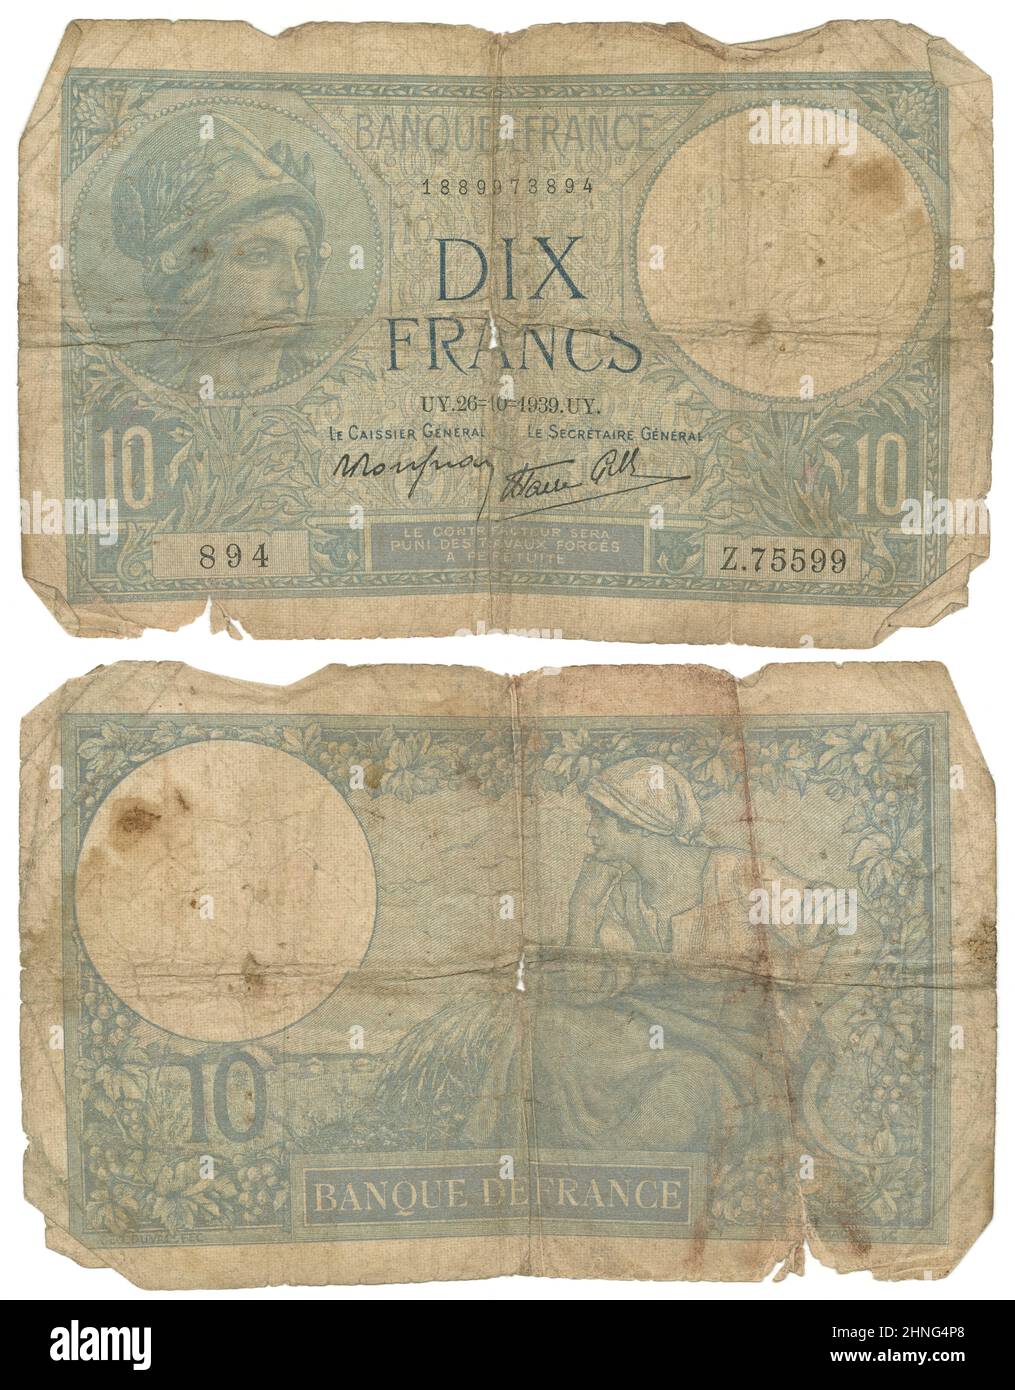 1939, Nota de los Diez Francos, Francia, anverso y reverso. Tamaño real: 137mm x 86mm. Foto de stock